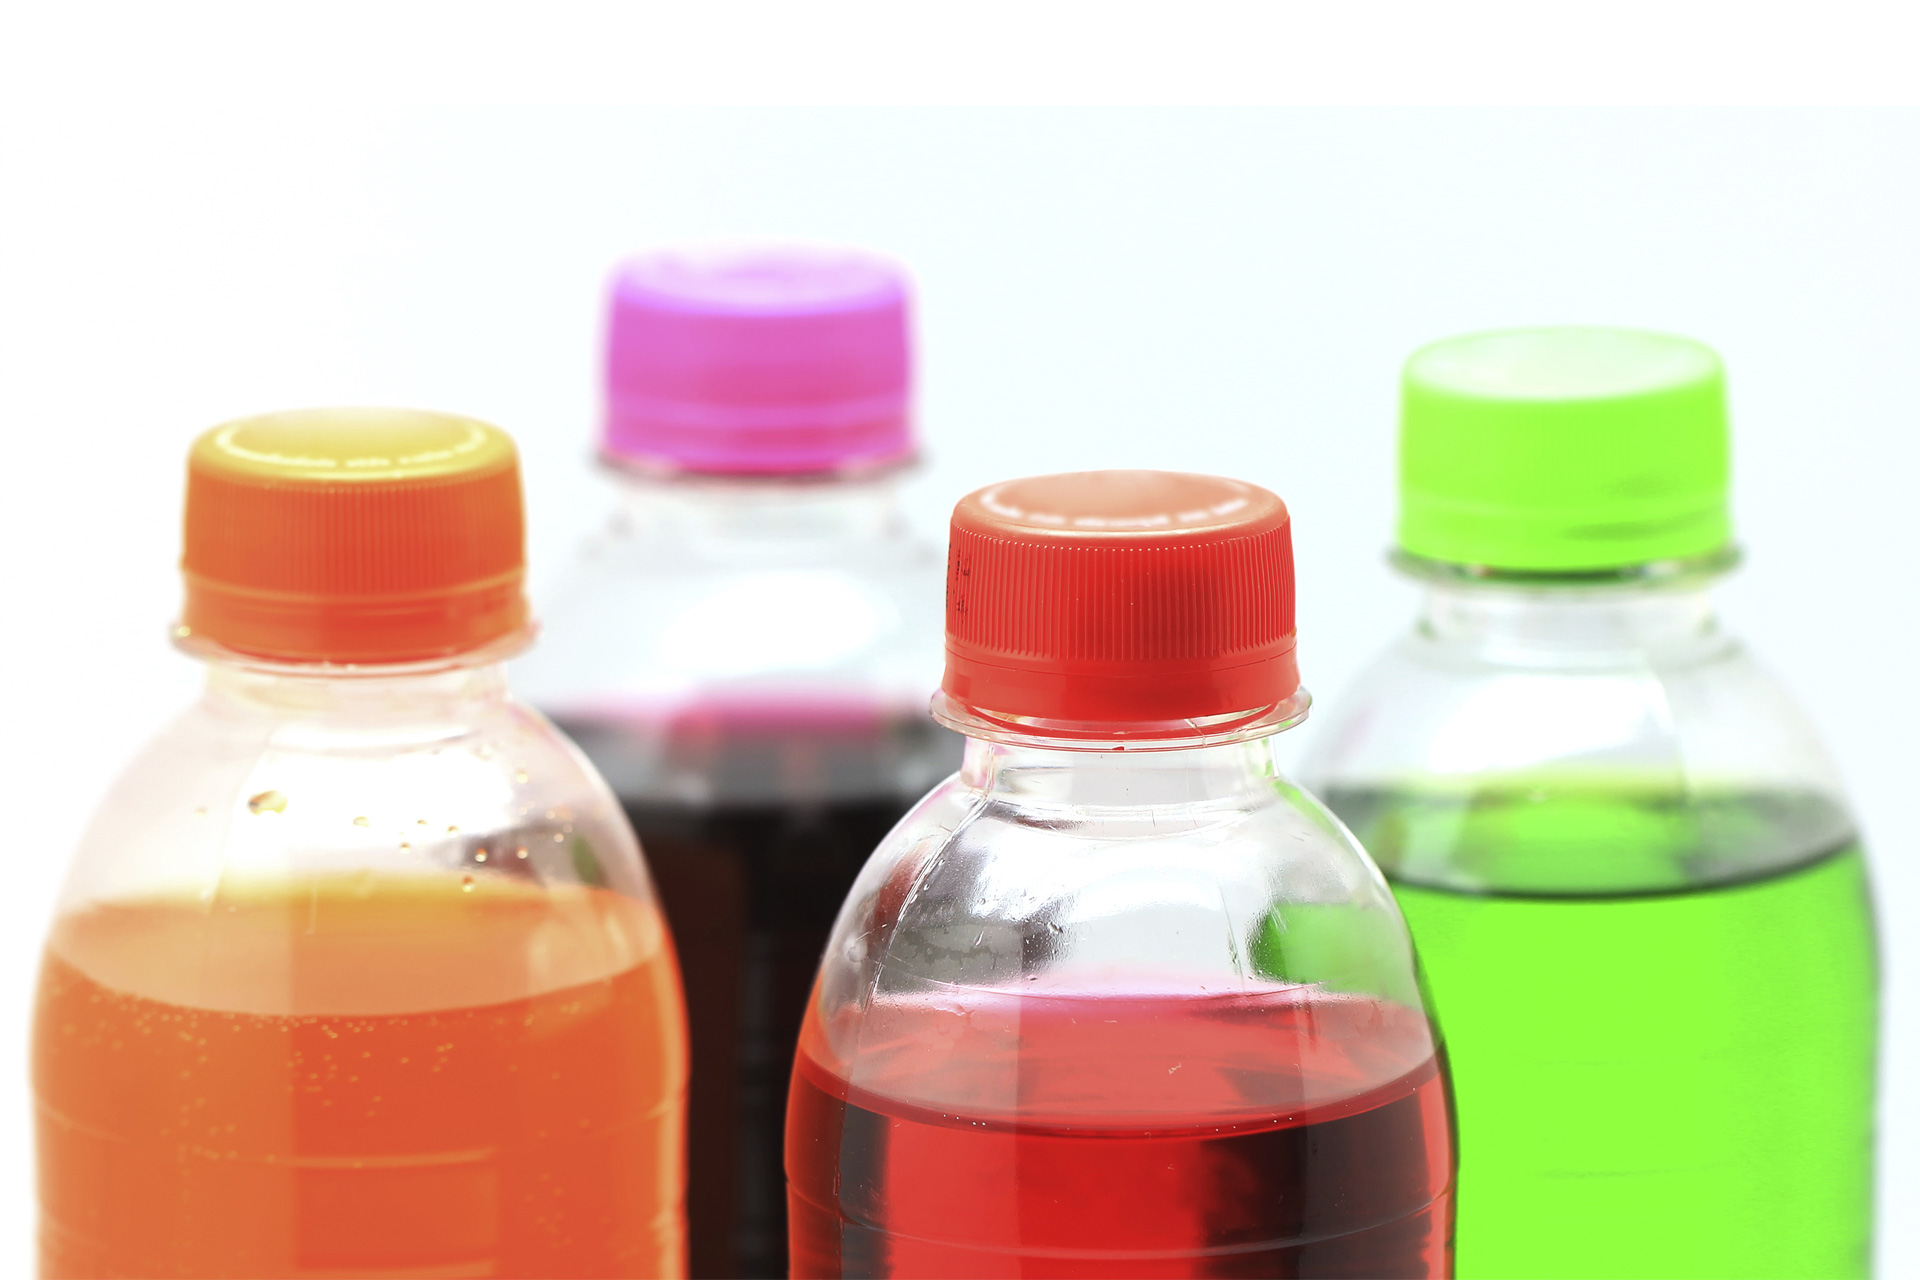 Las botellas de refresco y jugos azucarados tendrán que publicar en sus etiquetas los efectos negativos en la salud de los consumidores